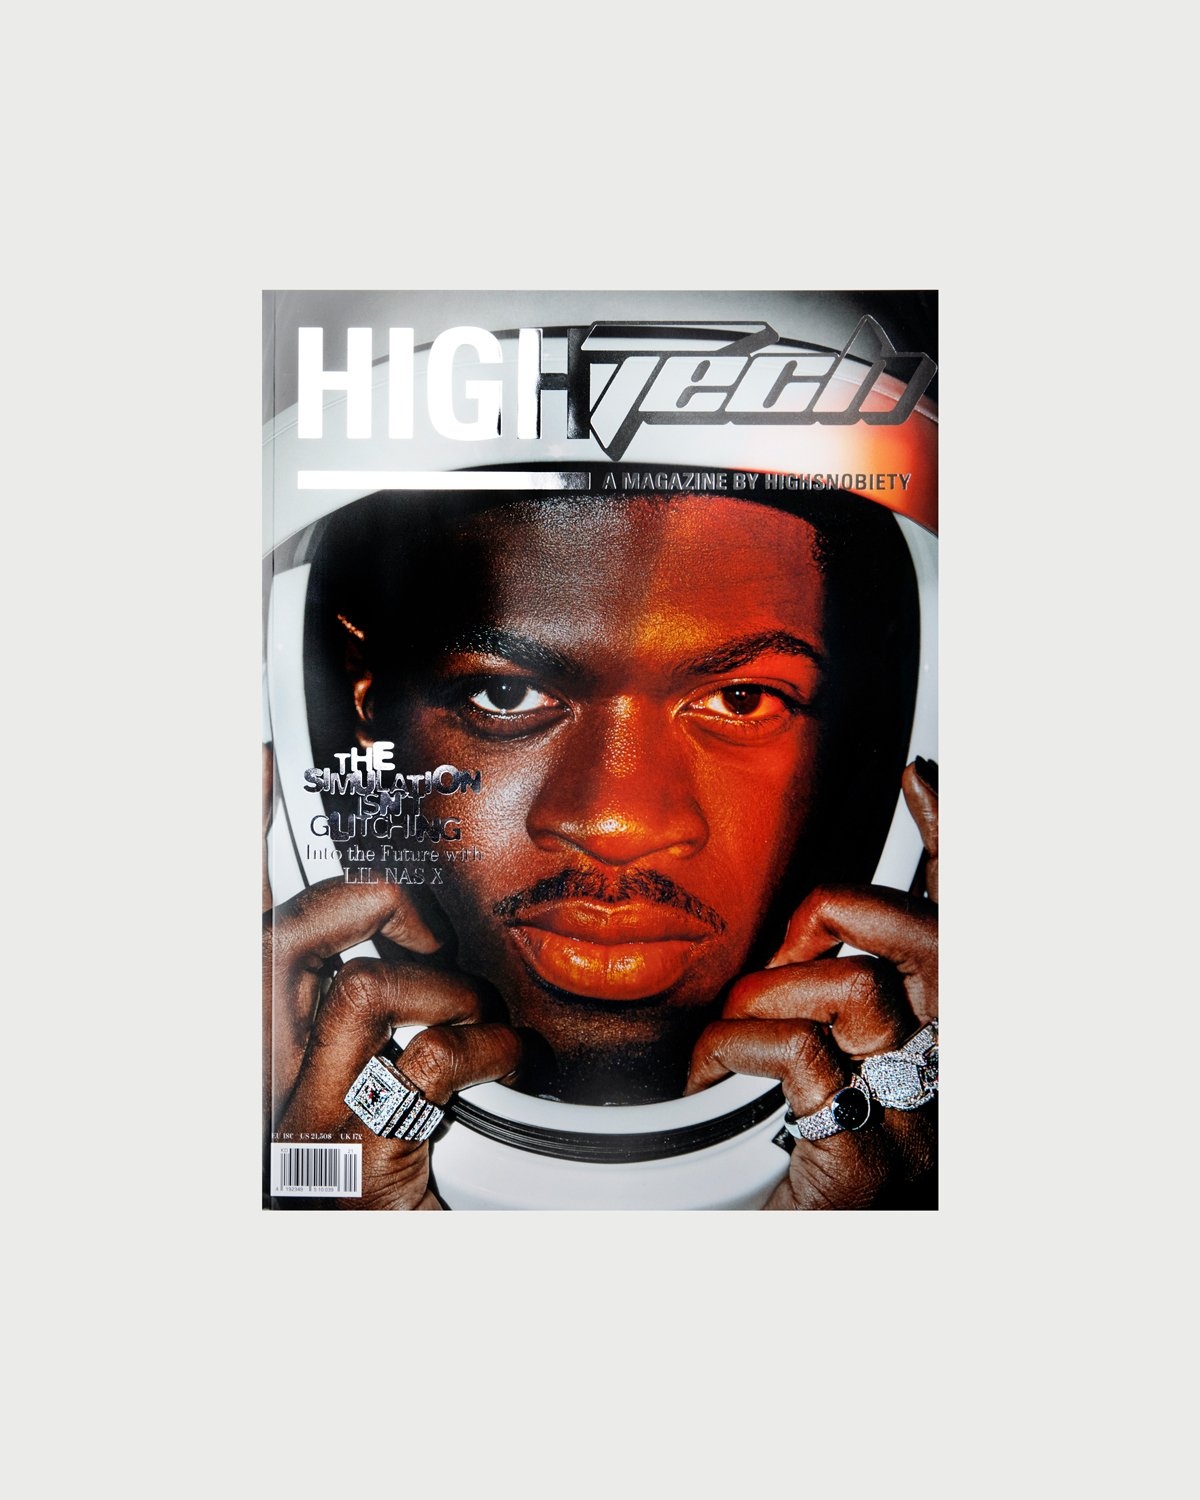 Highsnobiety – HIGHTech - A Magazine by Highsnobiety - Magazines - Multi - Image 1